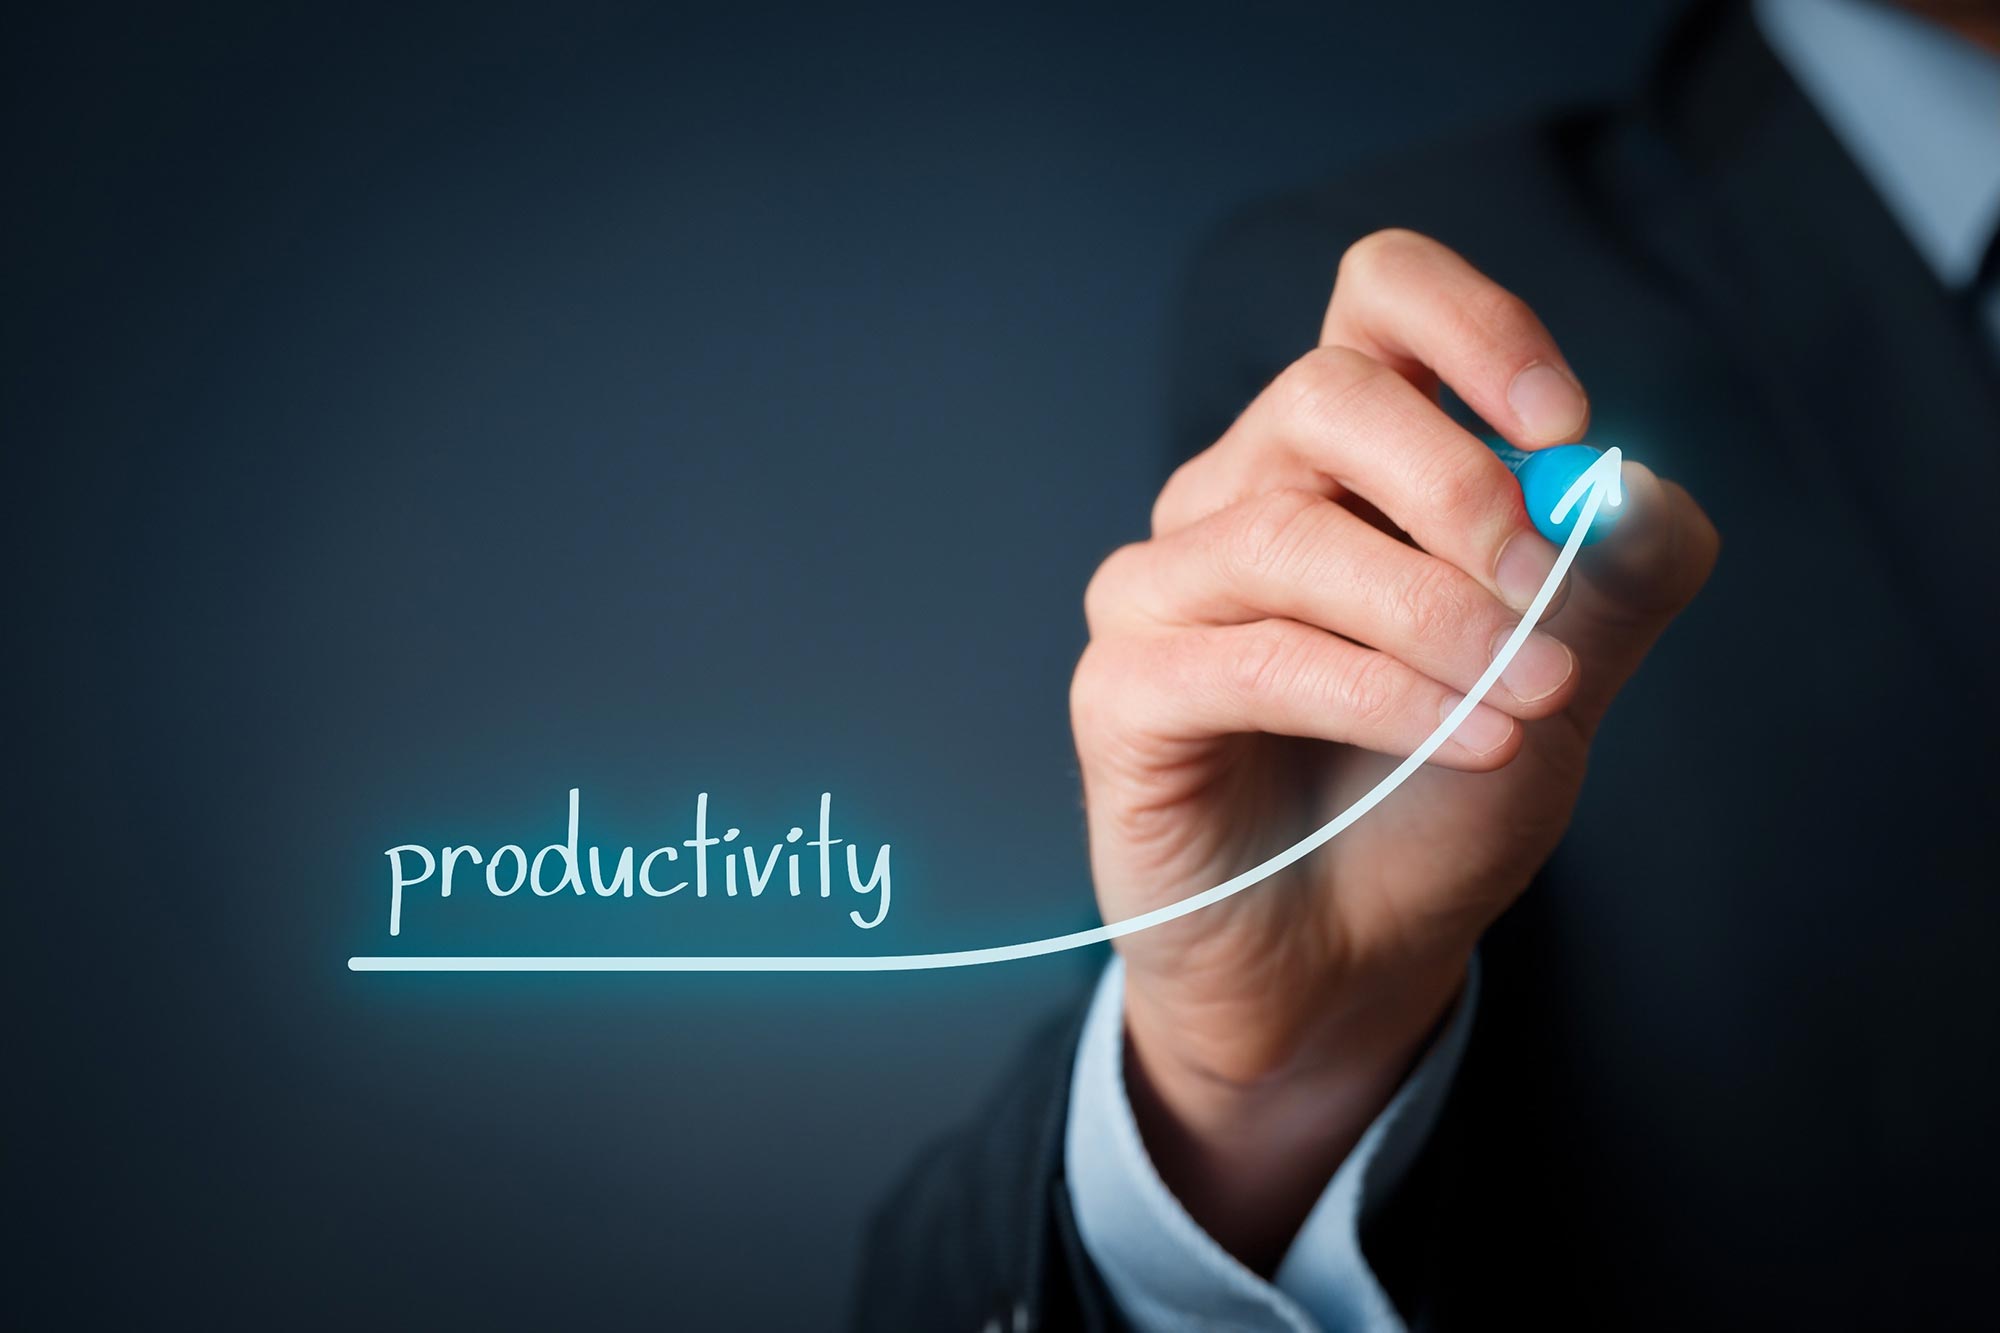 Aumenta tu productividad con el efecto Zeigarnik